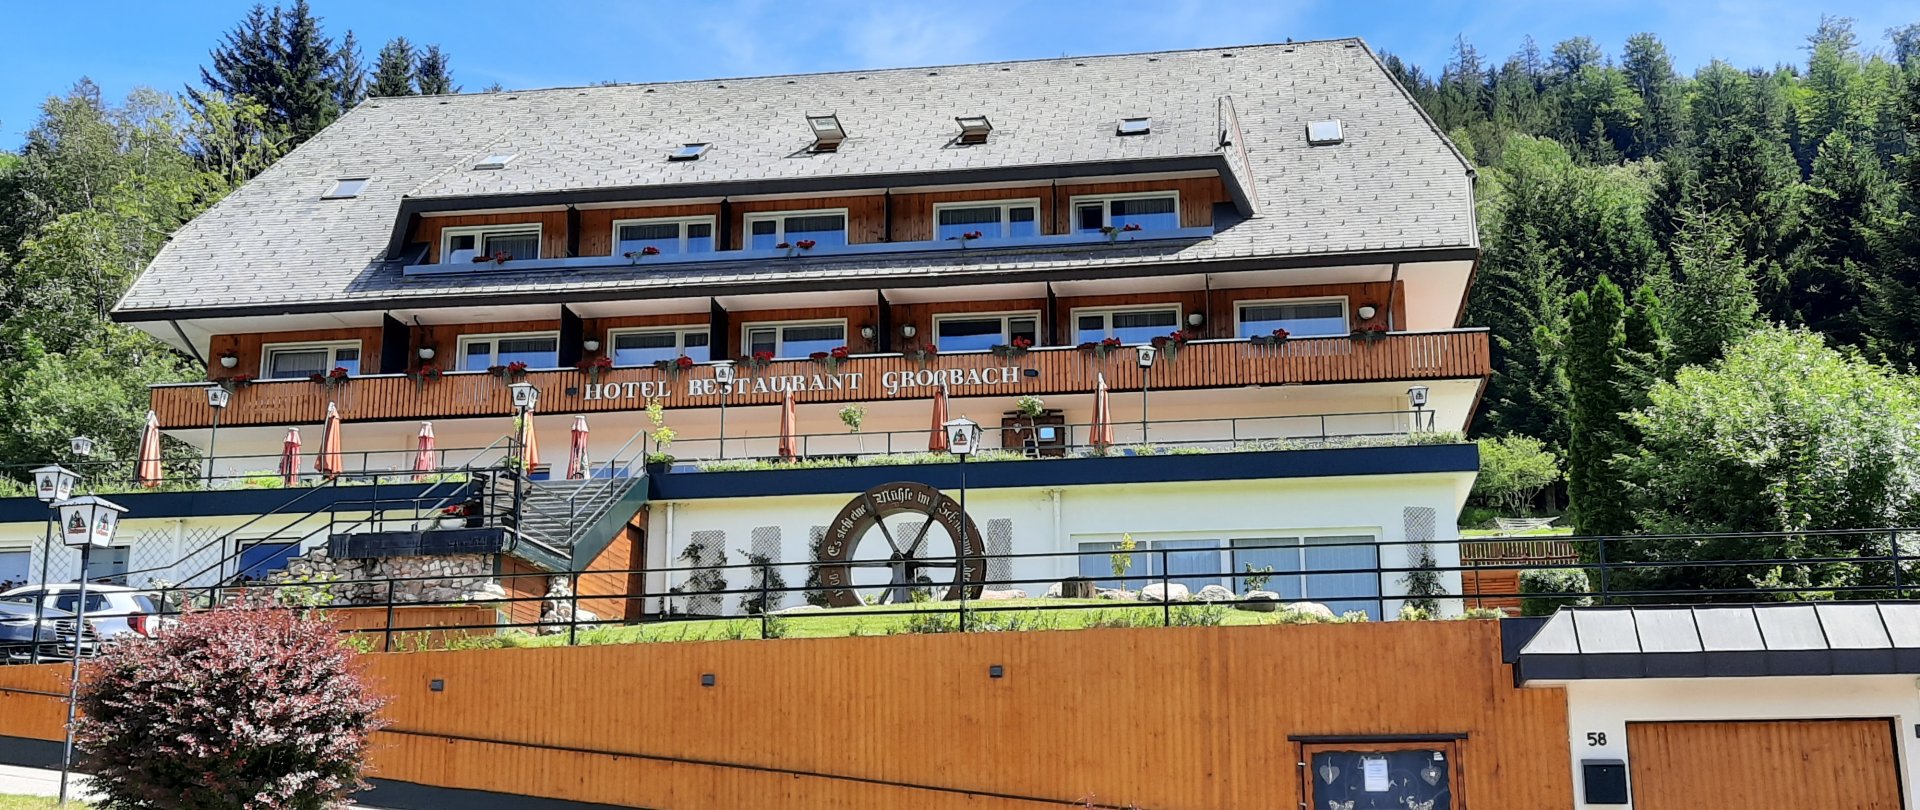 Hotel Großbach, Menzenschwand